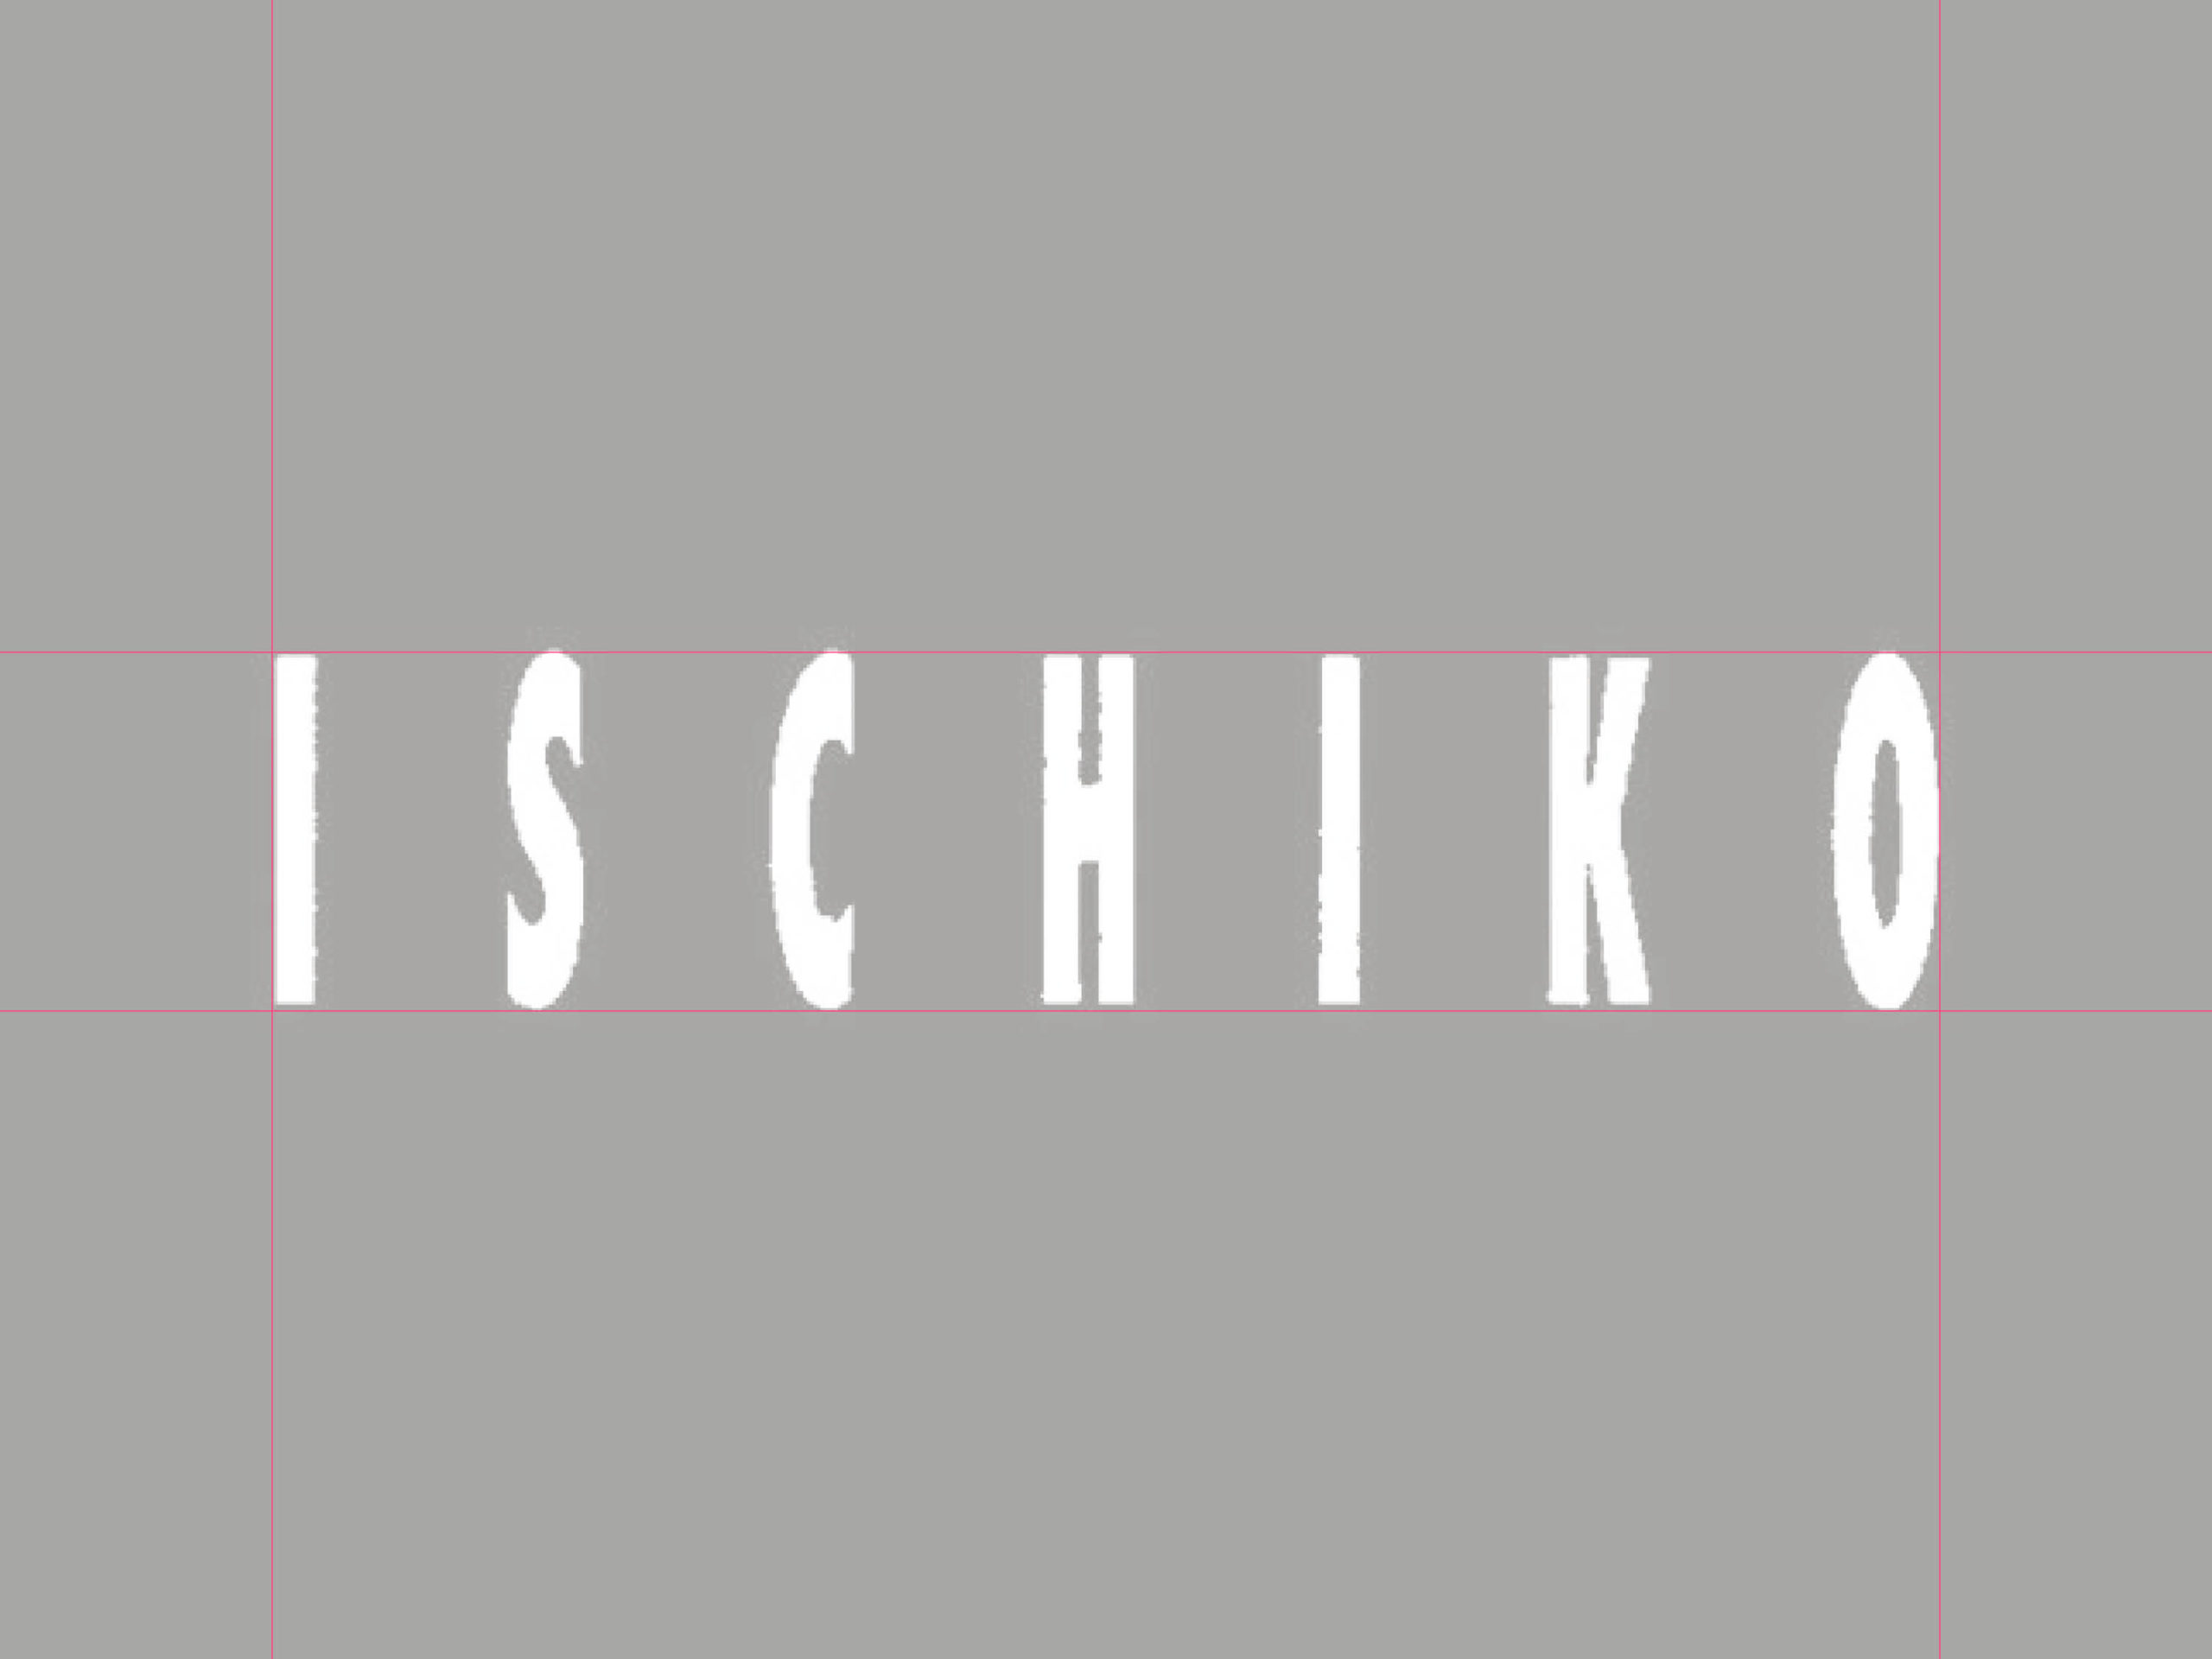 Ischiko_11